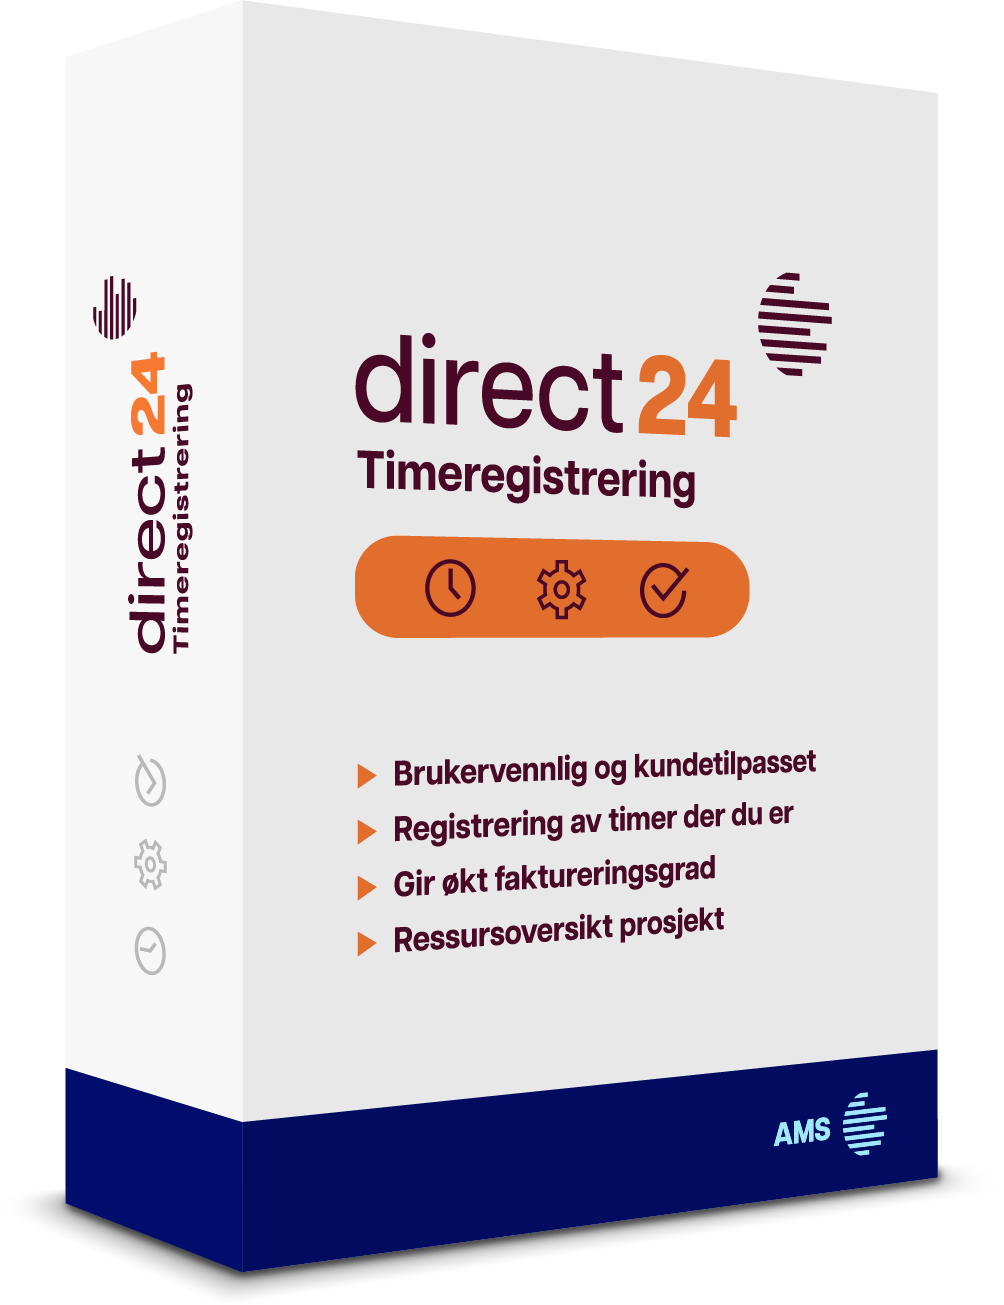 Markedsledende timeføringssystem for prosjektbasert virksomhet. direct 24 er et svært fleksibelt timeregistreringssystem som tilbyr en enkel og effektiv måte å registrere timer på. Vi har lang erfaring med timeføring og har utviklet timeregistreringsprogram sammen med kunder siden 1991.